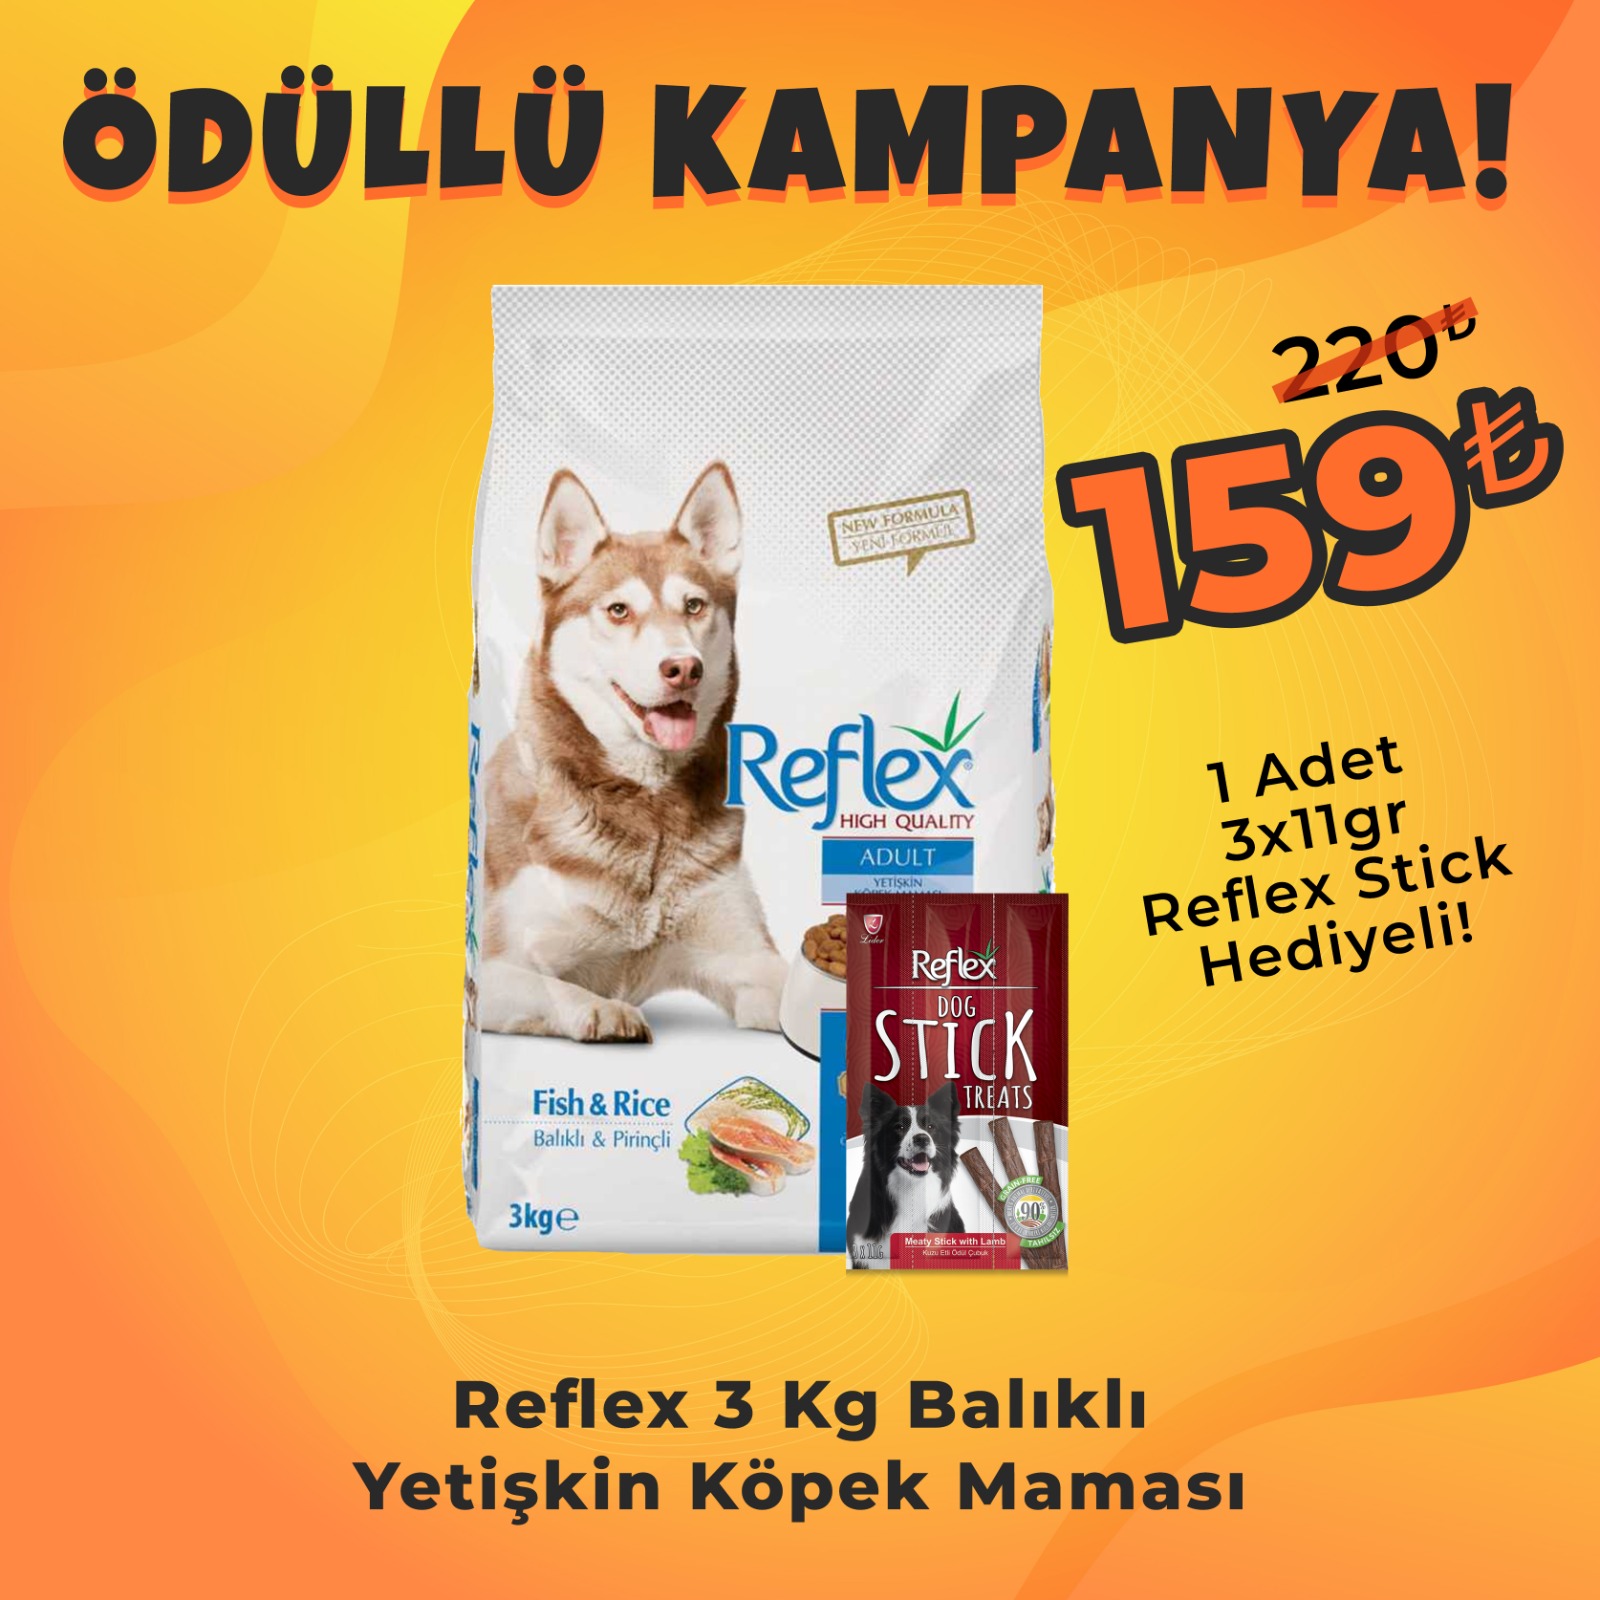 Reflex 3 Kg Somonlu pirinçli Yetişkin Köpek Maması + Reflex Köpek Stick Ödül Hediyeli 3x11 Gr